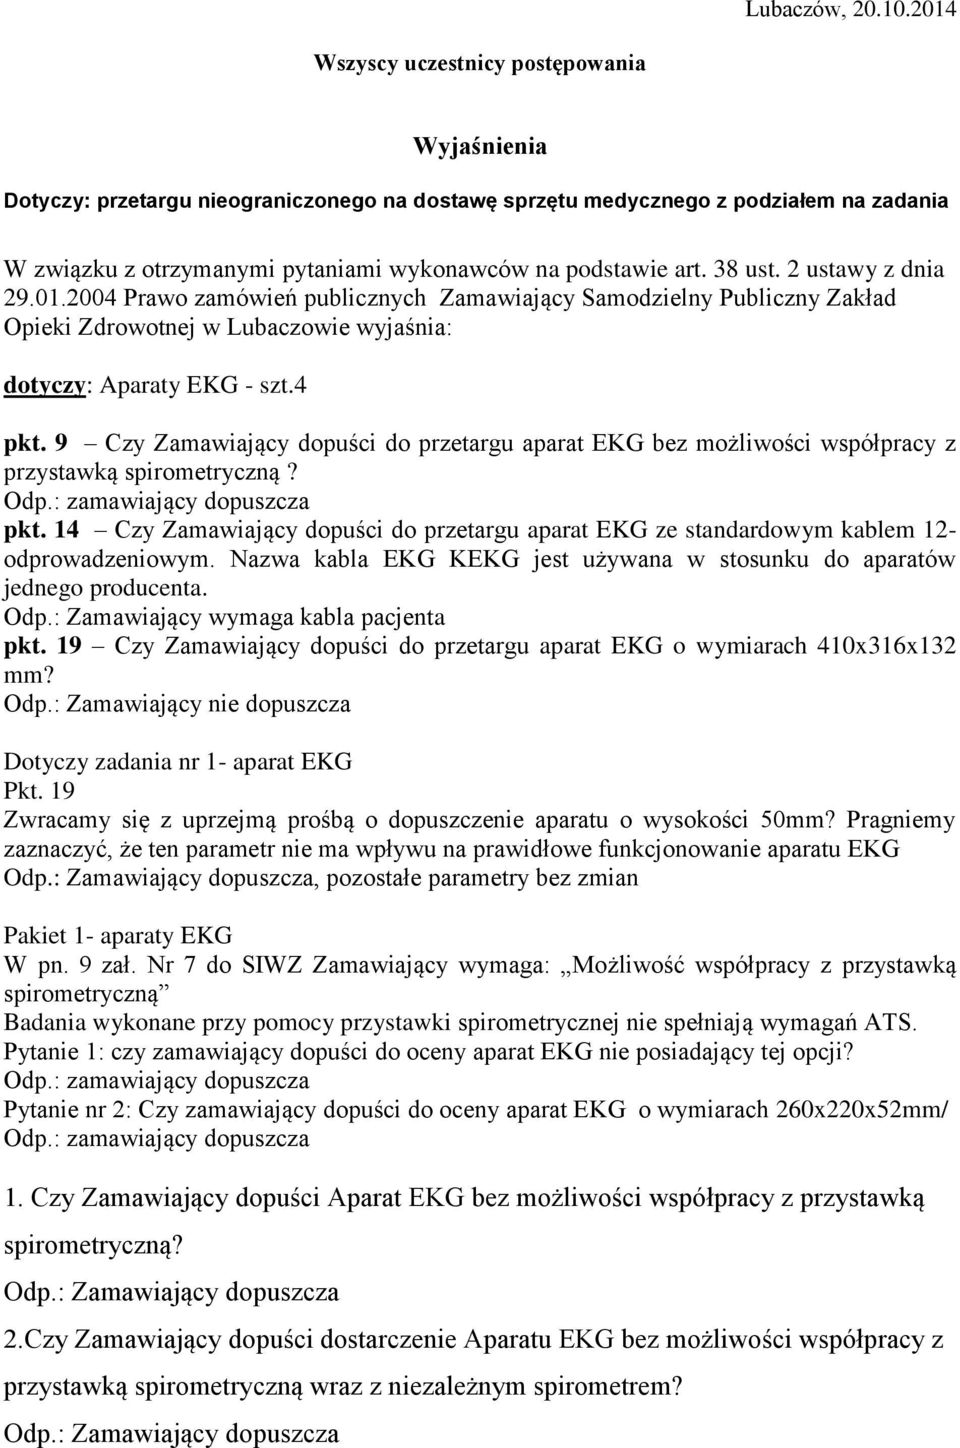 38 ust. 2 ustawy z dnia 29.01.2004 Prawo zamówień publicznych Zamawiający Samodzielny Publiczny Zakład Opieki Zdrowotnej w Lubaczowie wyjaśnia: dotyczy: Aparaty EKG - szt.4 pkt.